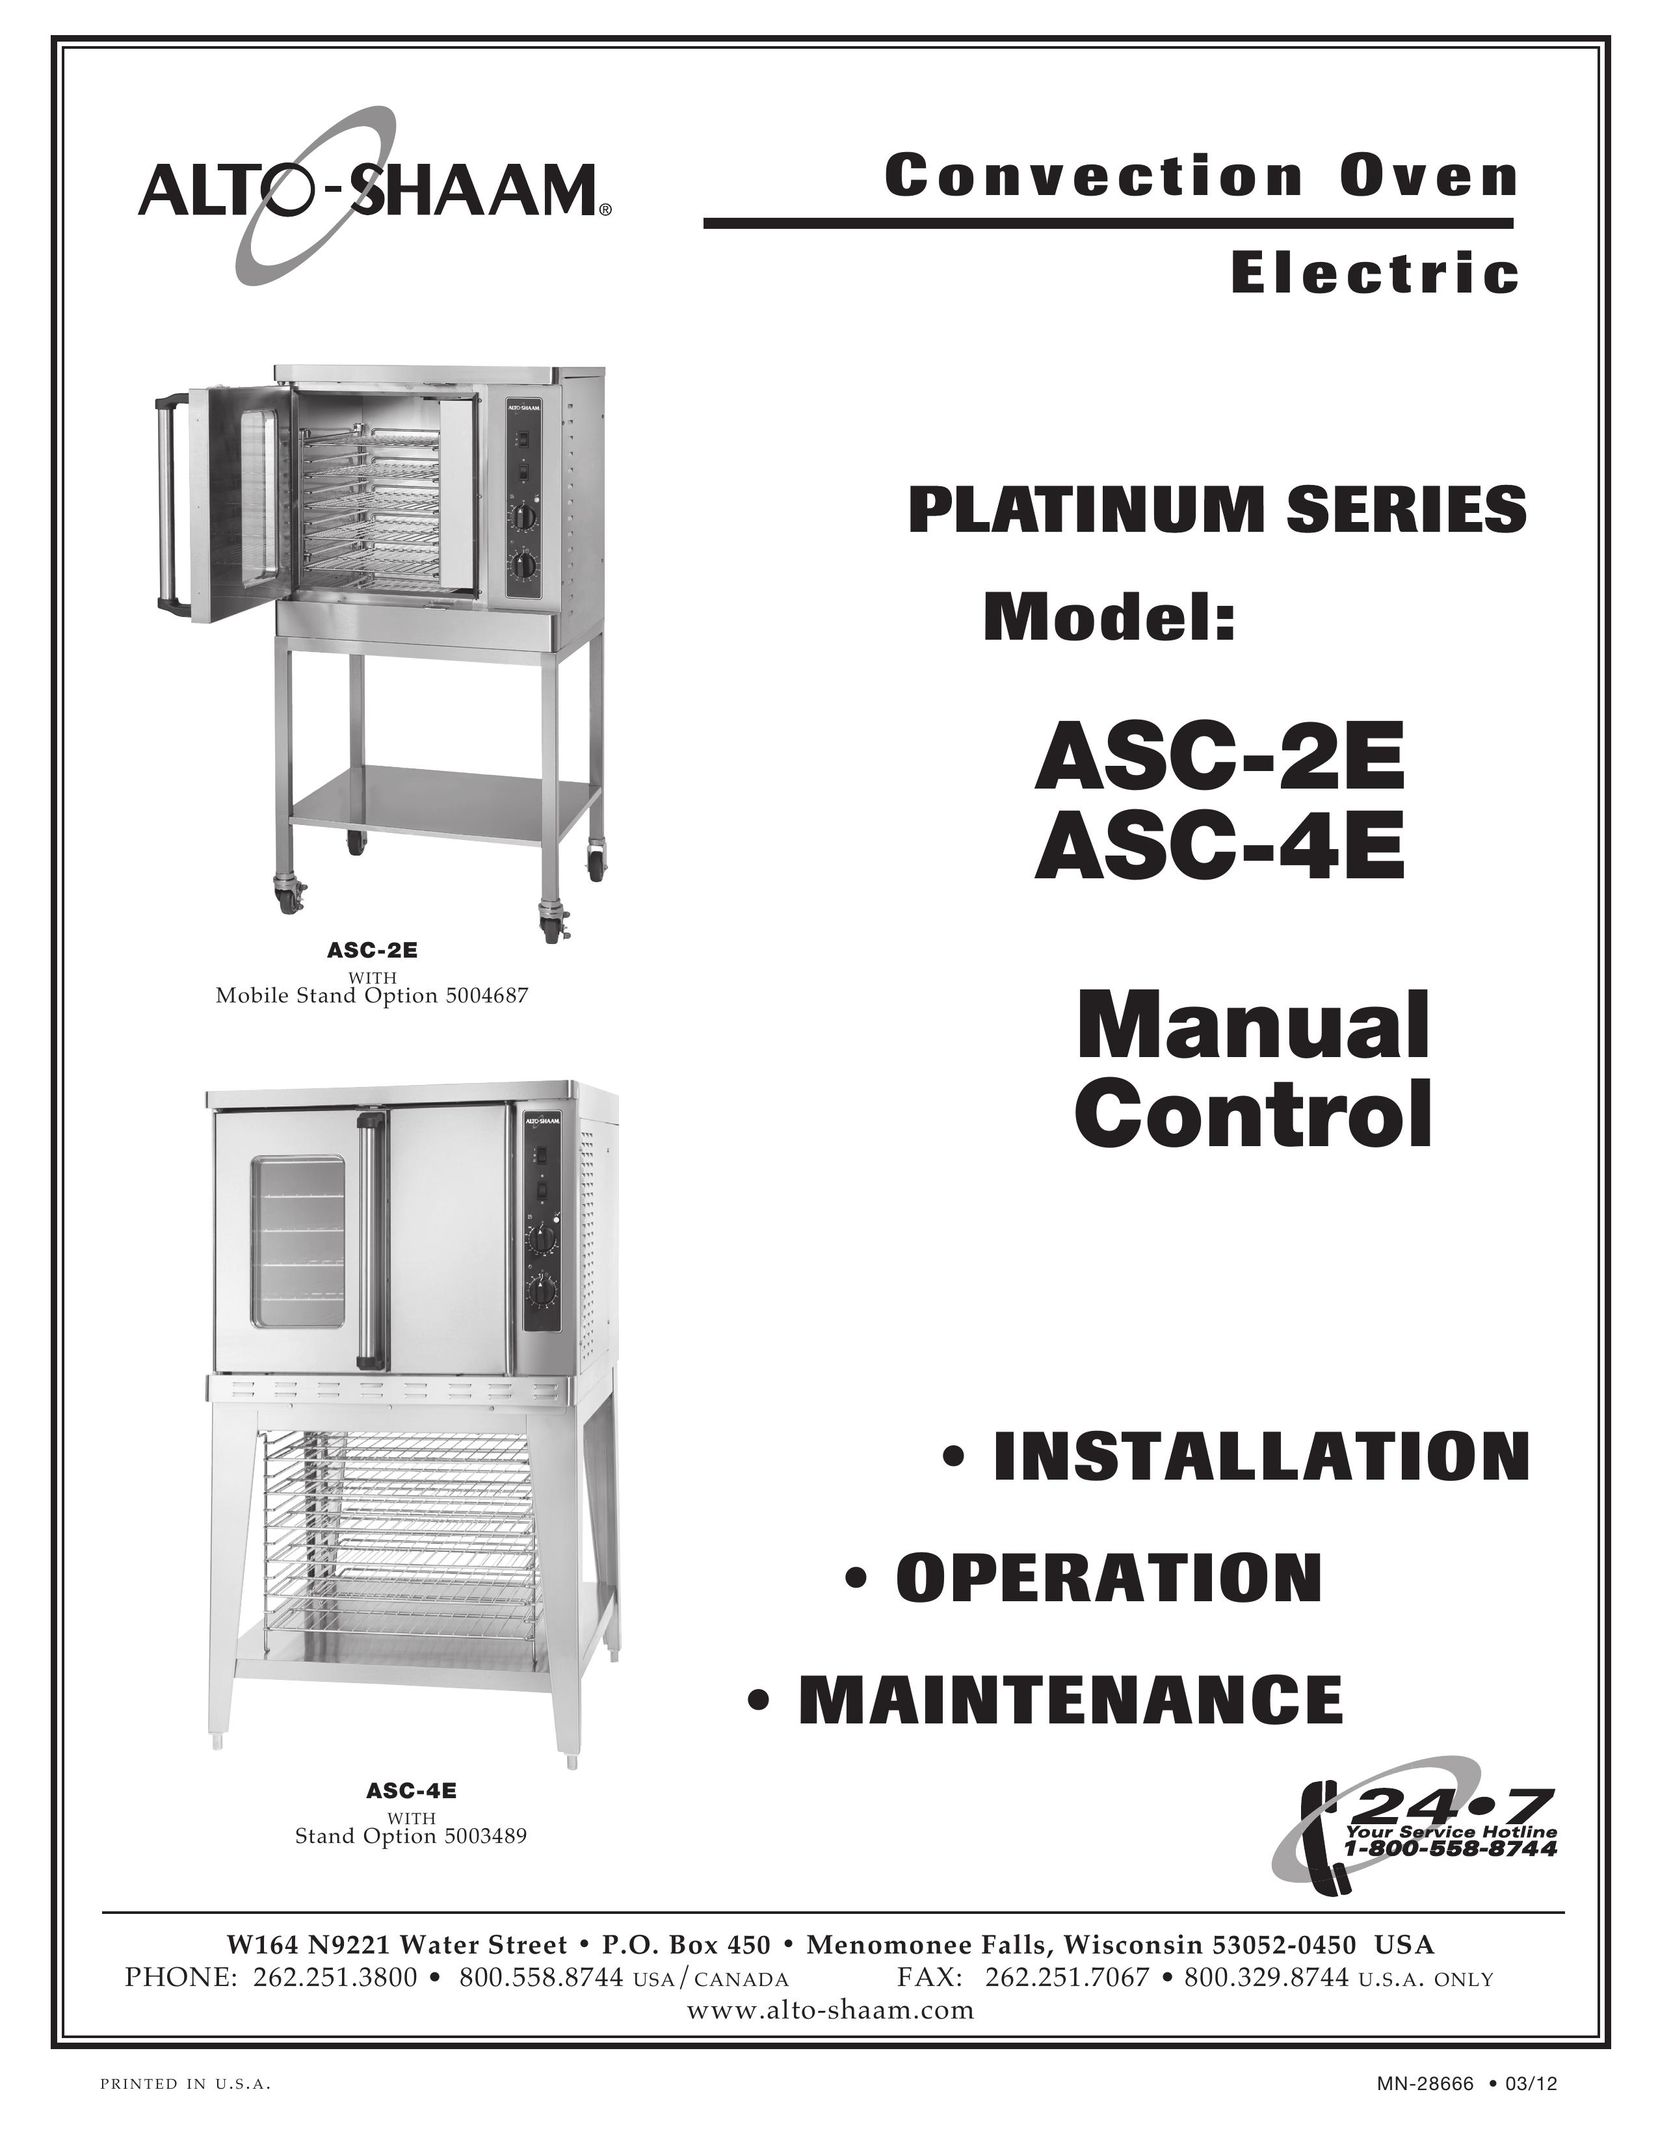 Alto-Shaam ASC-2E Convection Oven User Manual